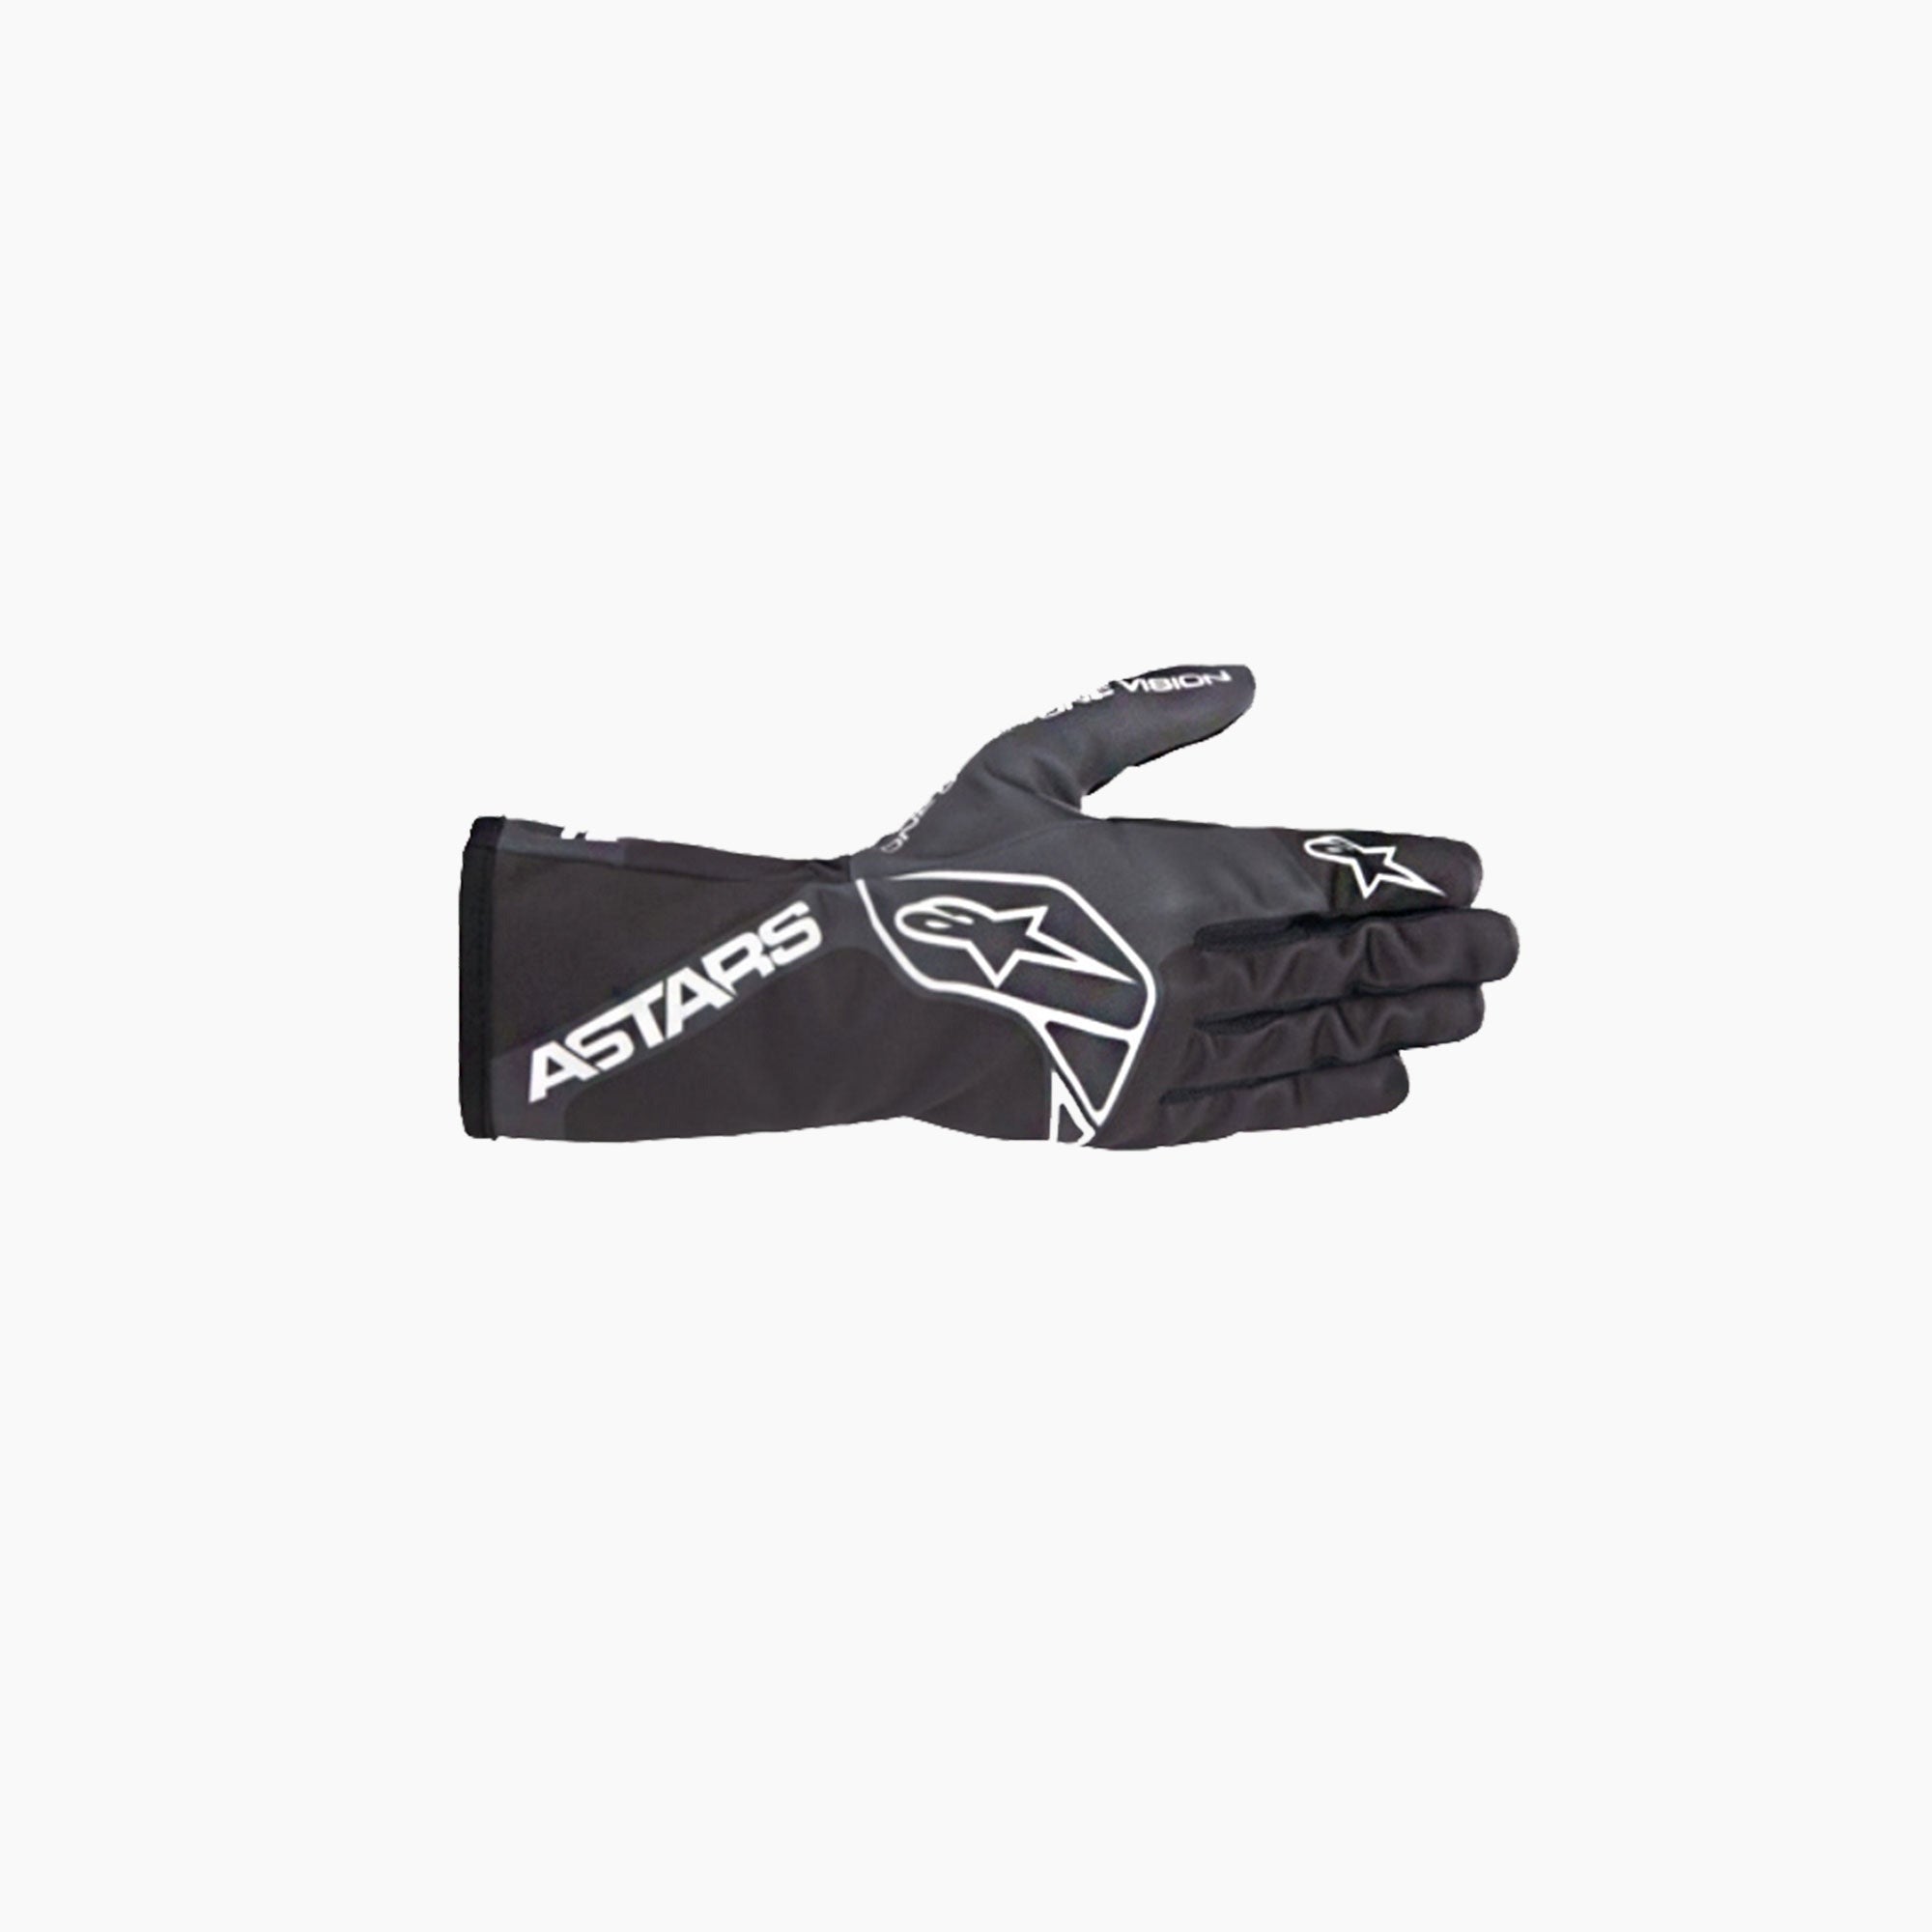 Alpinestars | Tech-1 K Race V2 One Vision Karting Gloves Gloves-Karting Gloves-Alpinestars-gpx-store